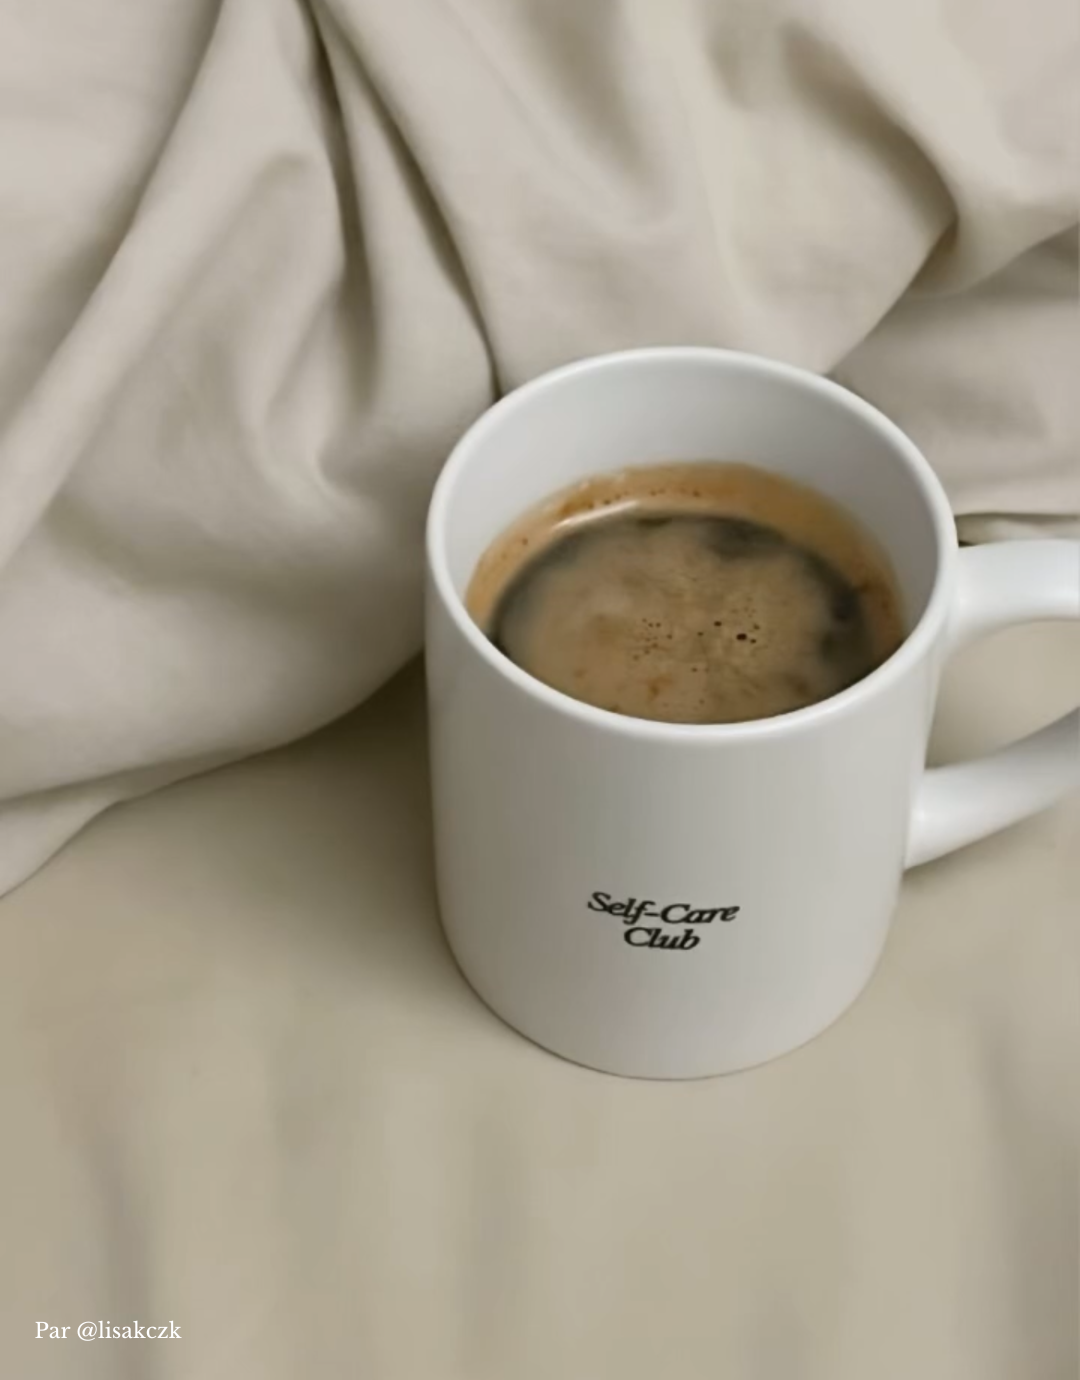 Tasse à café blanche en céramique Self-care Club posée sur des draps.